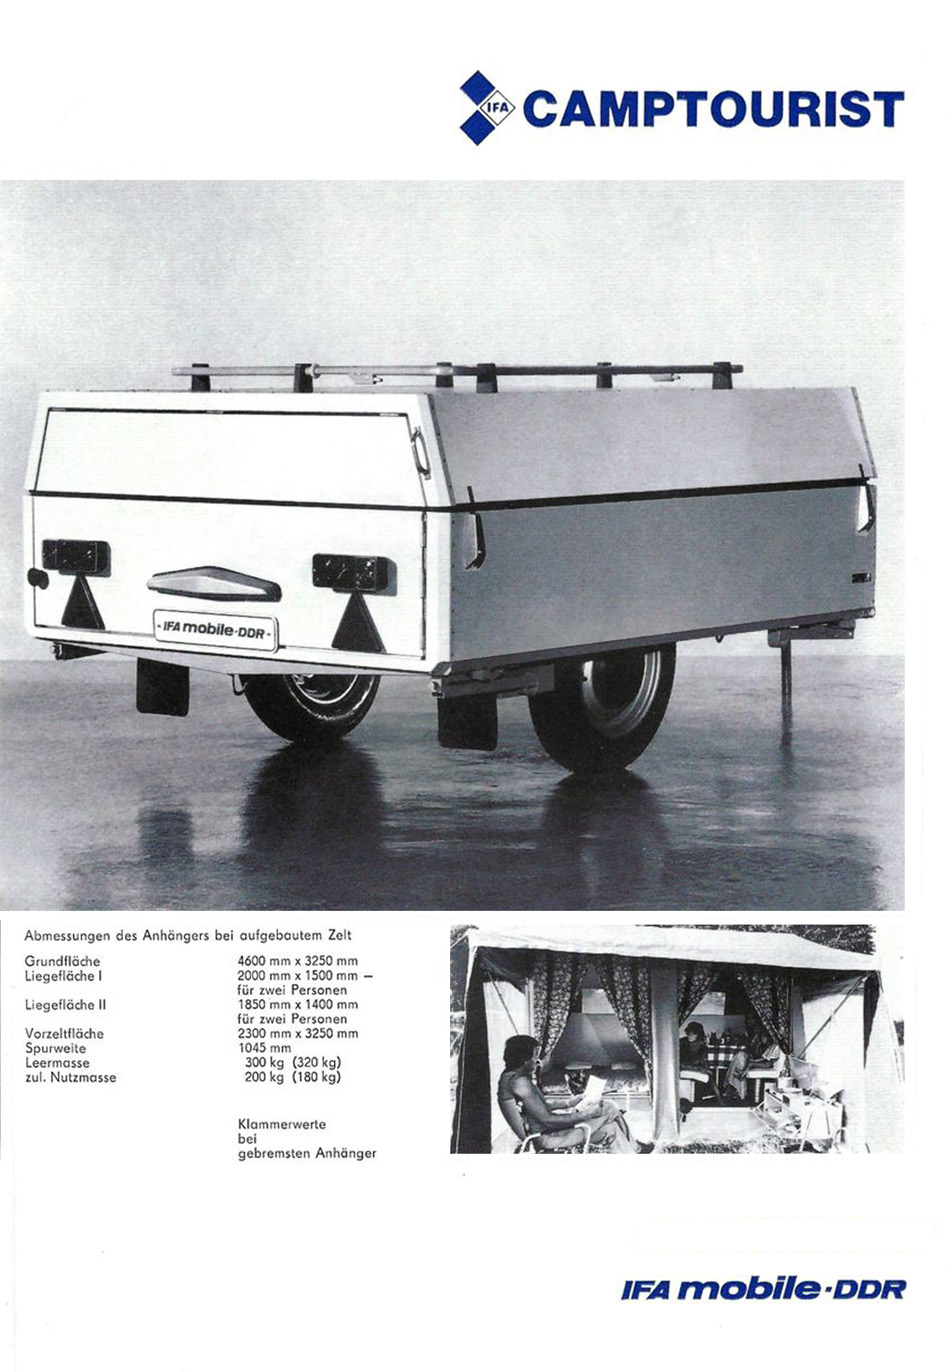 1979 - Trabant 601 und Camptourist - Seite 4